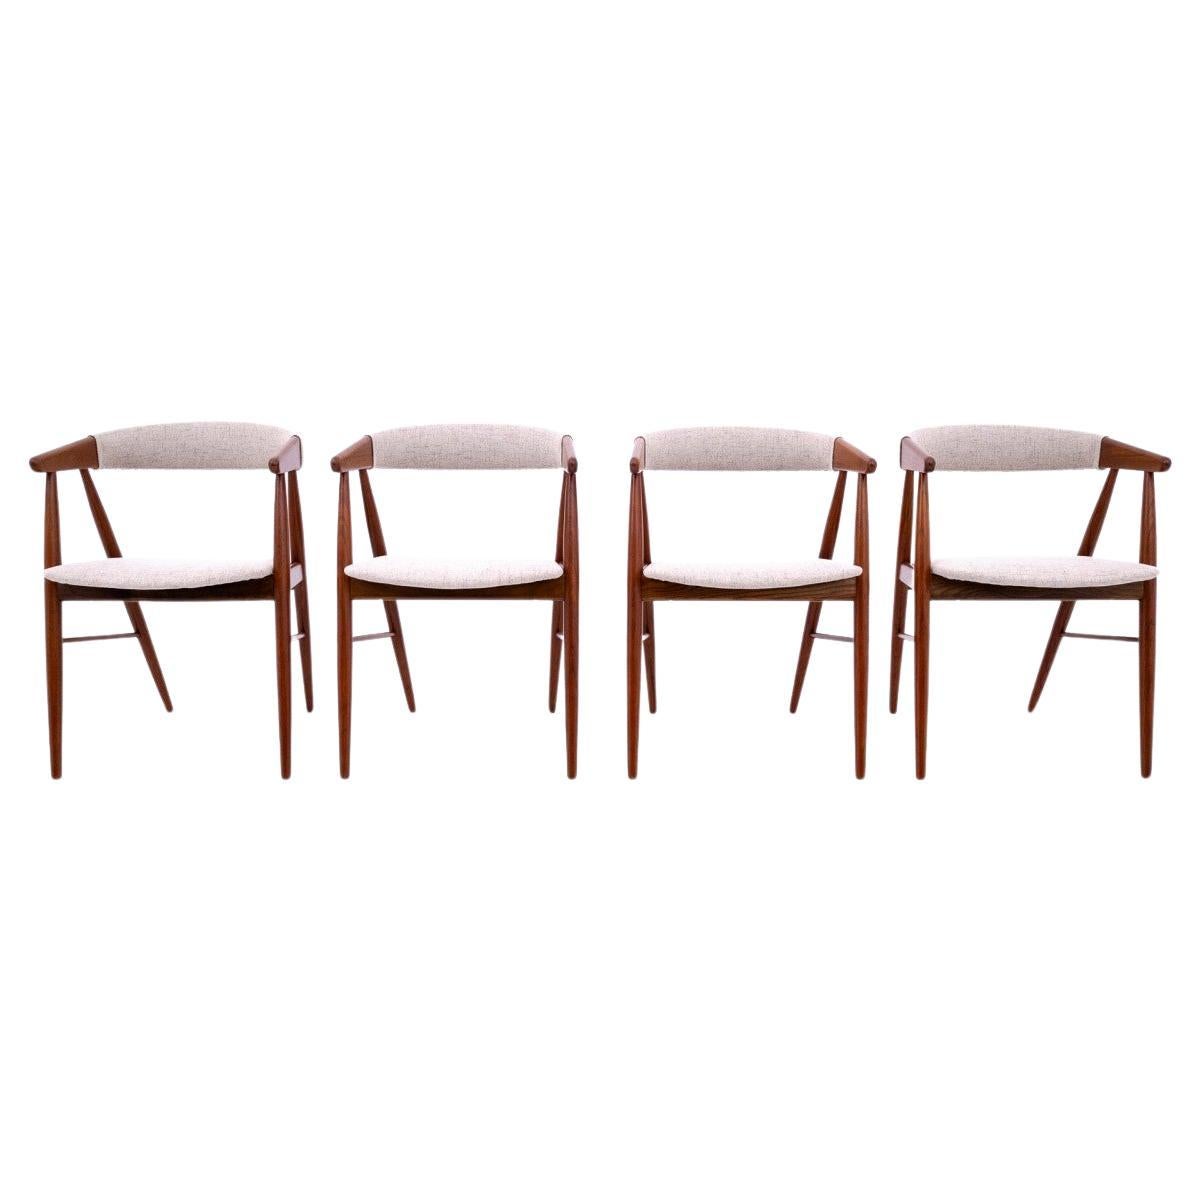 Stühle entworfen von Ejner Larsen & Aksel Bender Madsen, Dänemark, 1960er Jahre. Nach ren